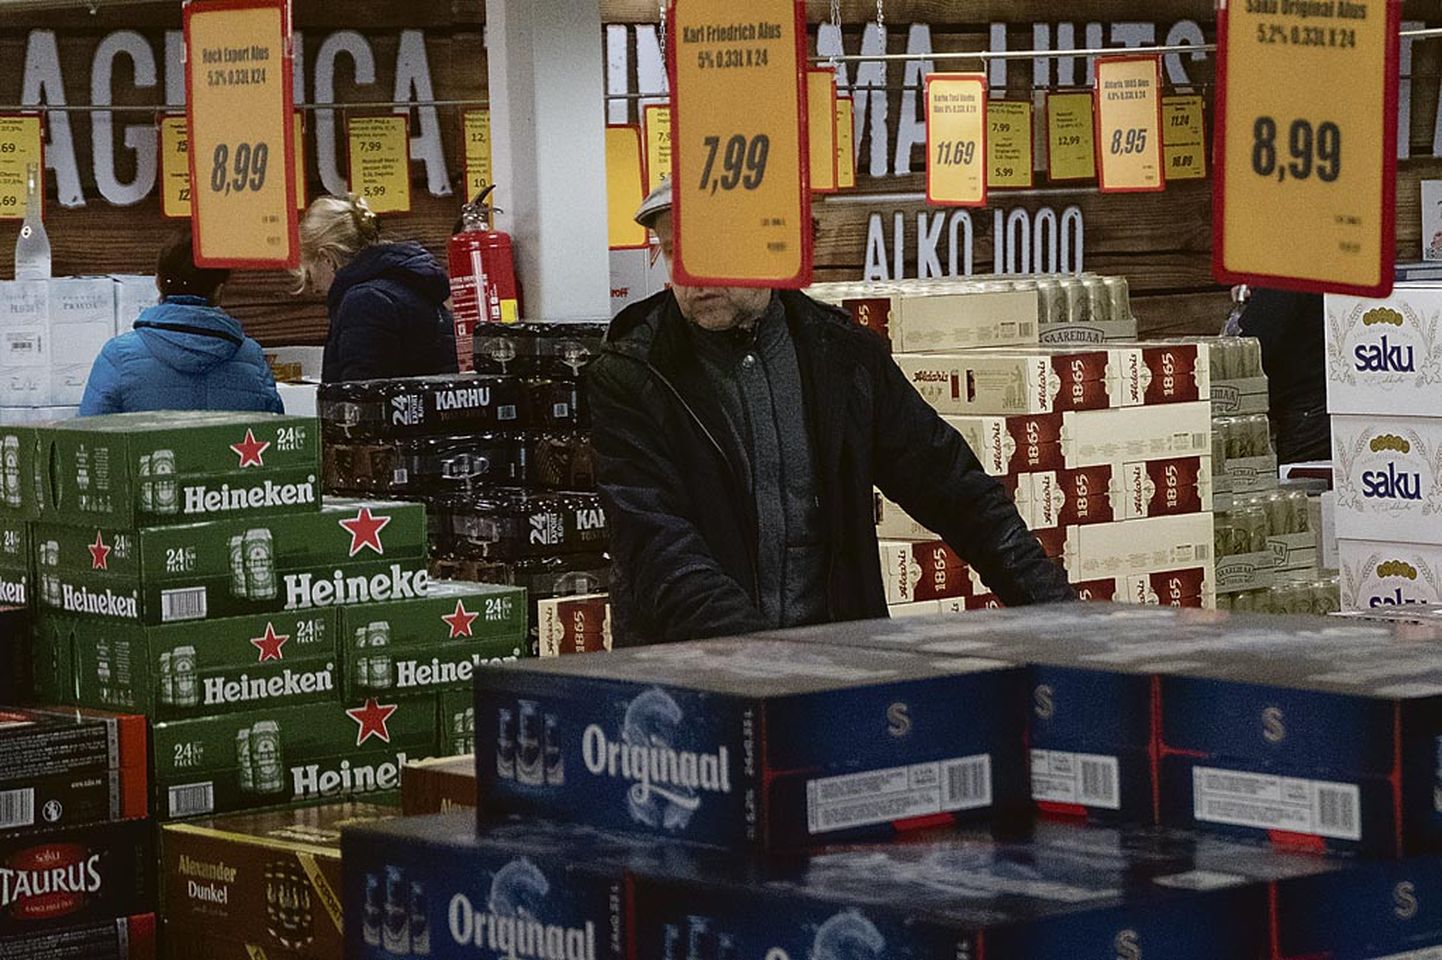 Alko-1000 Marketi nimeline alkoholipood Eesti-Läti piiril.